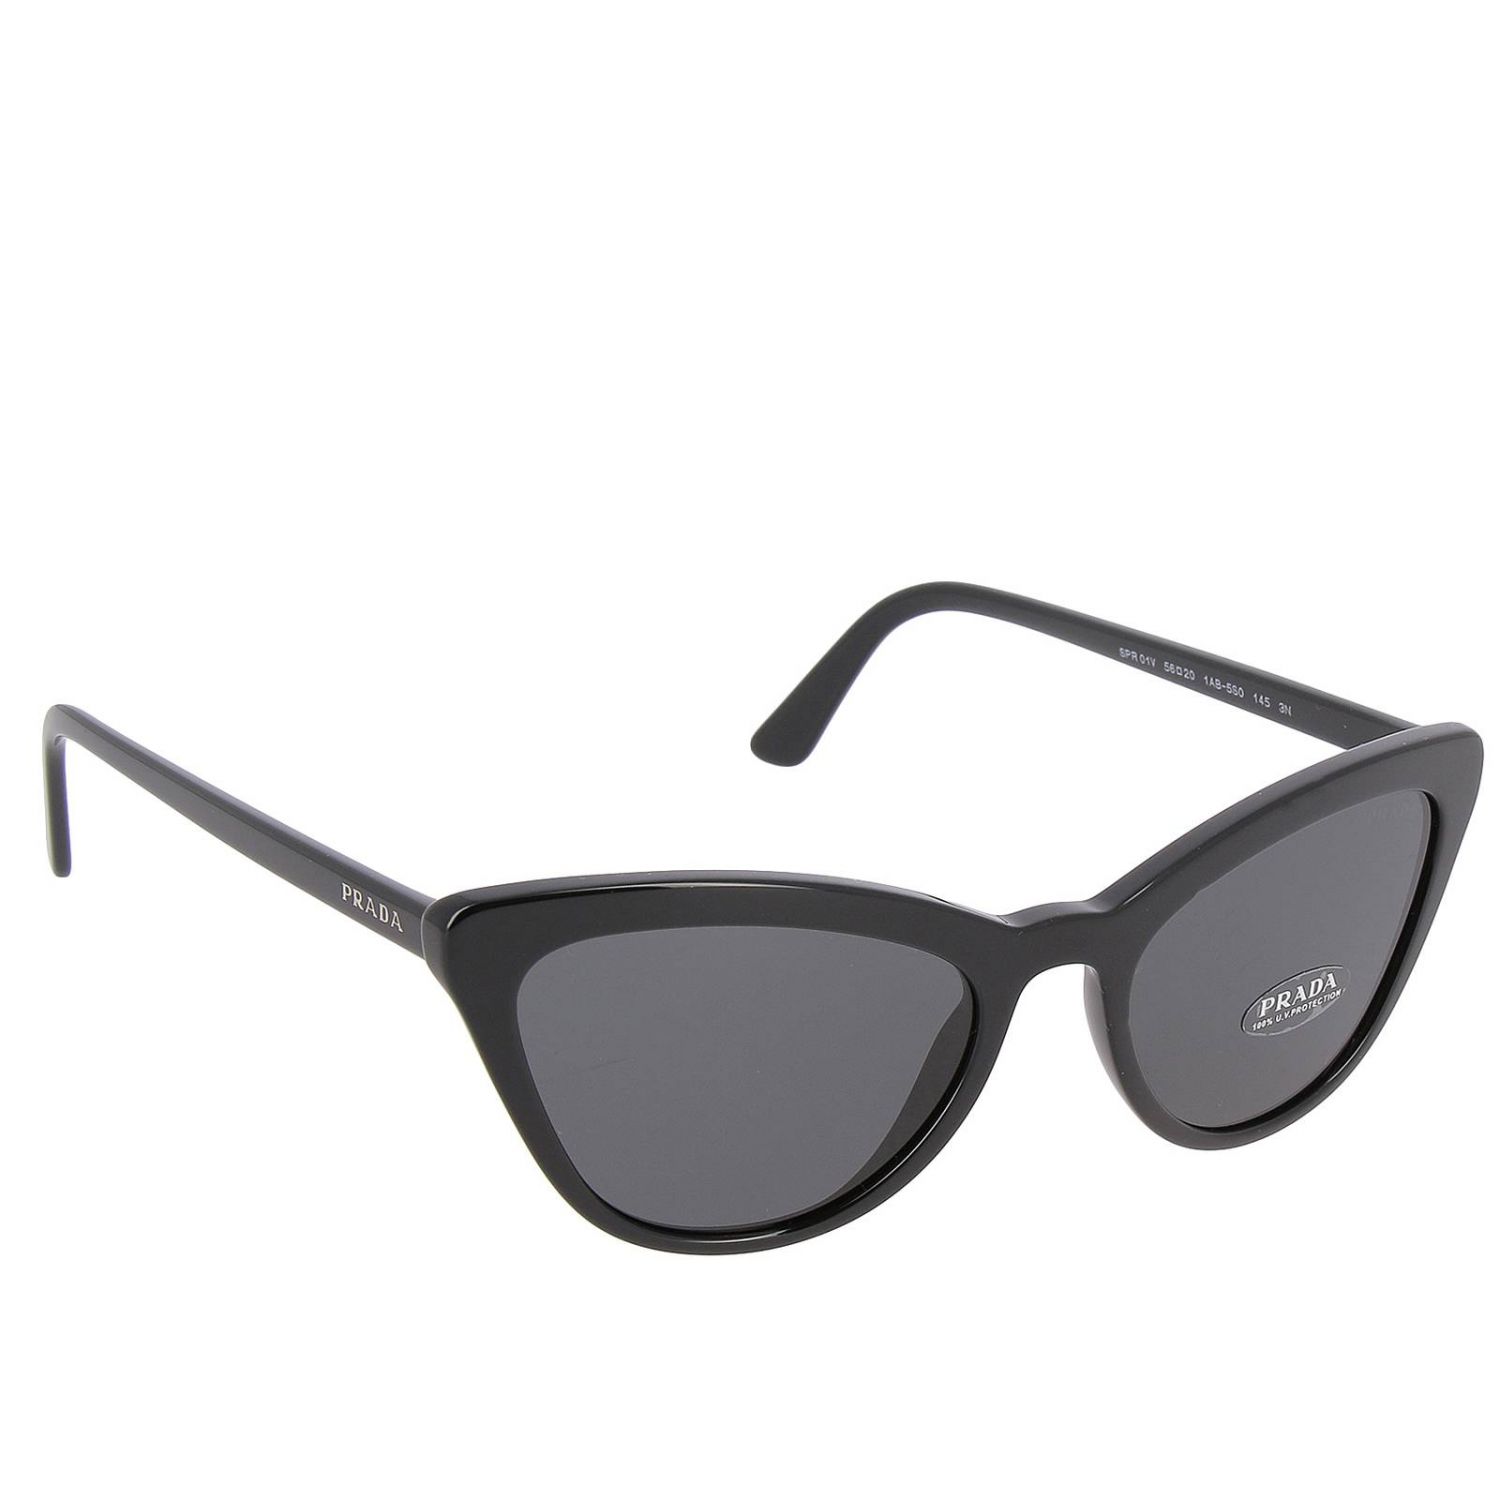 Prada Outlet: Sunglasses women - Black | Glasses Prada SPR 01V GIGLIO.COM